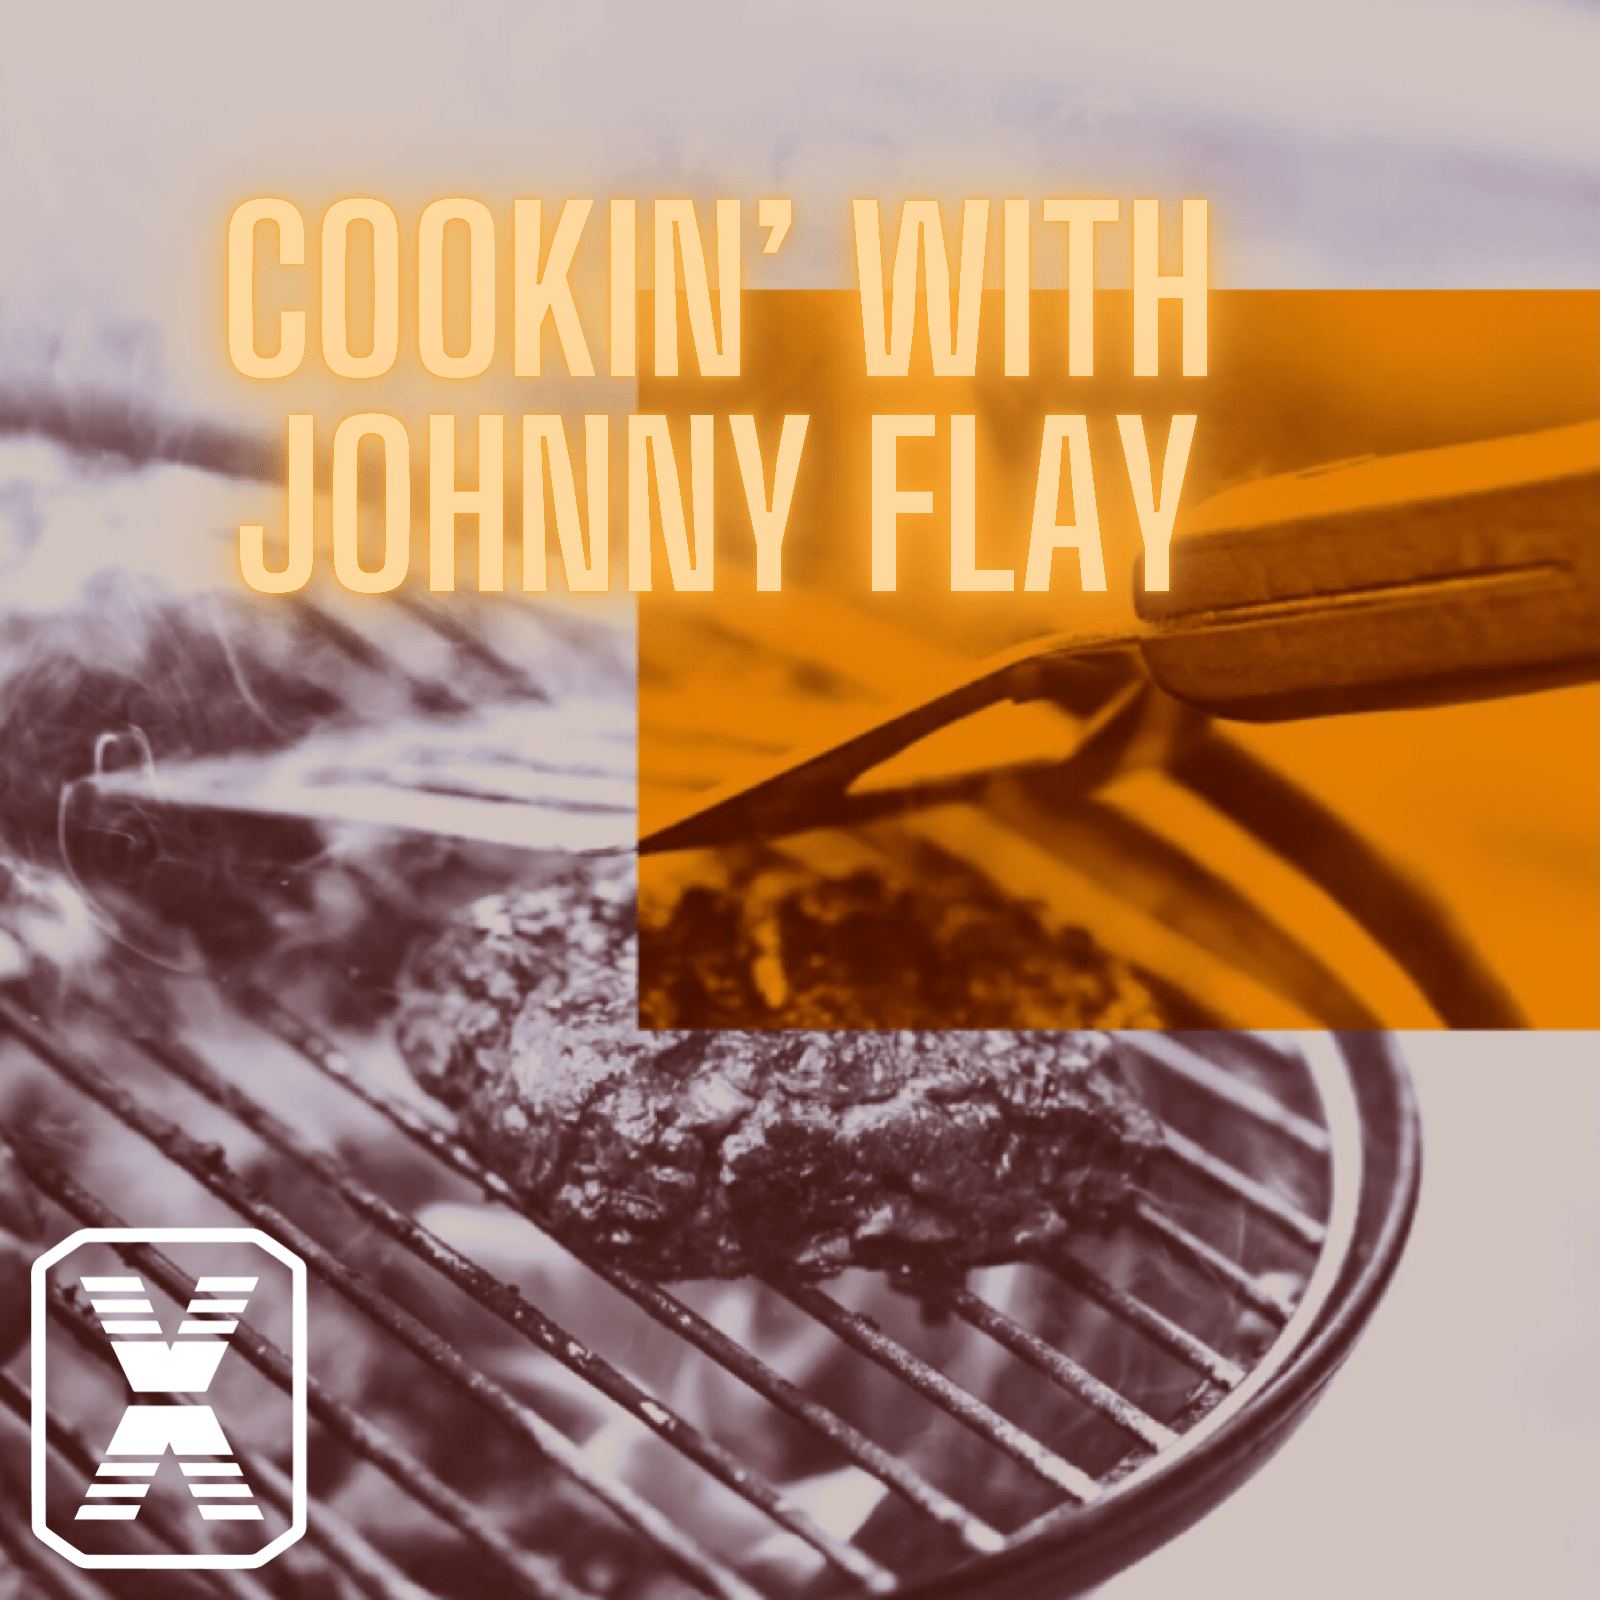 Meet Johnny Flay